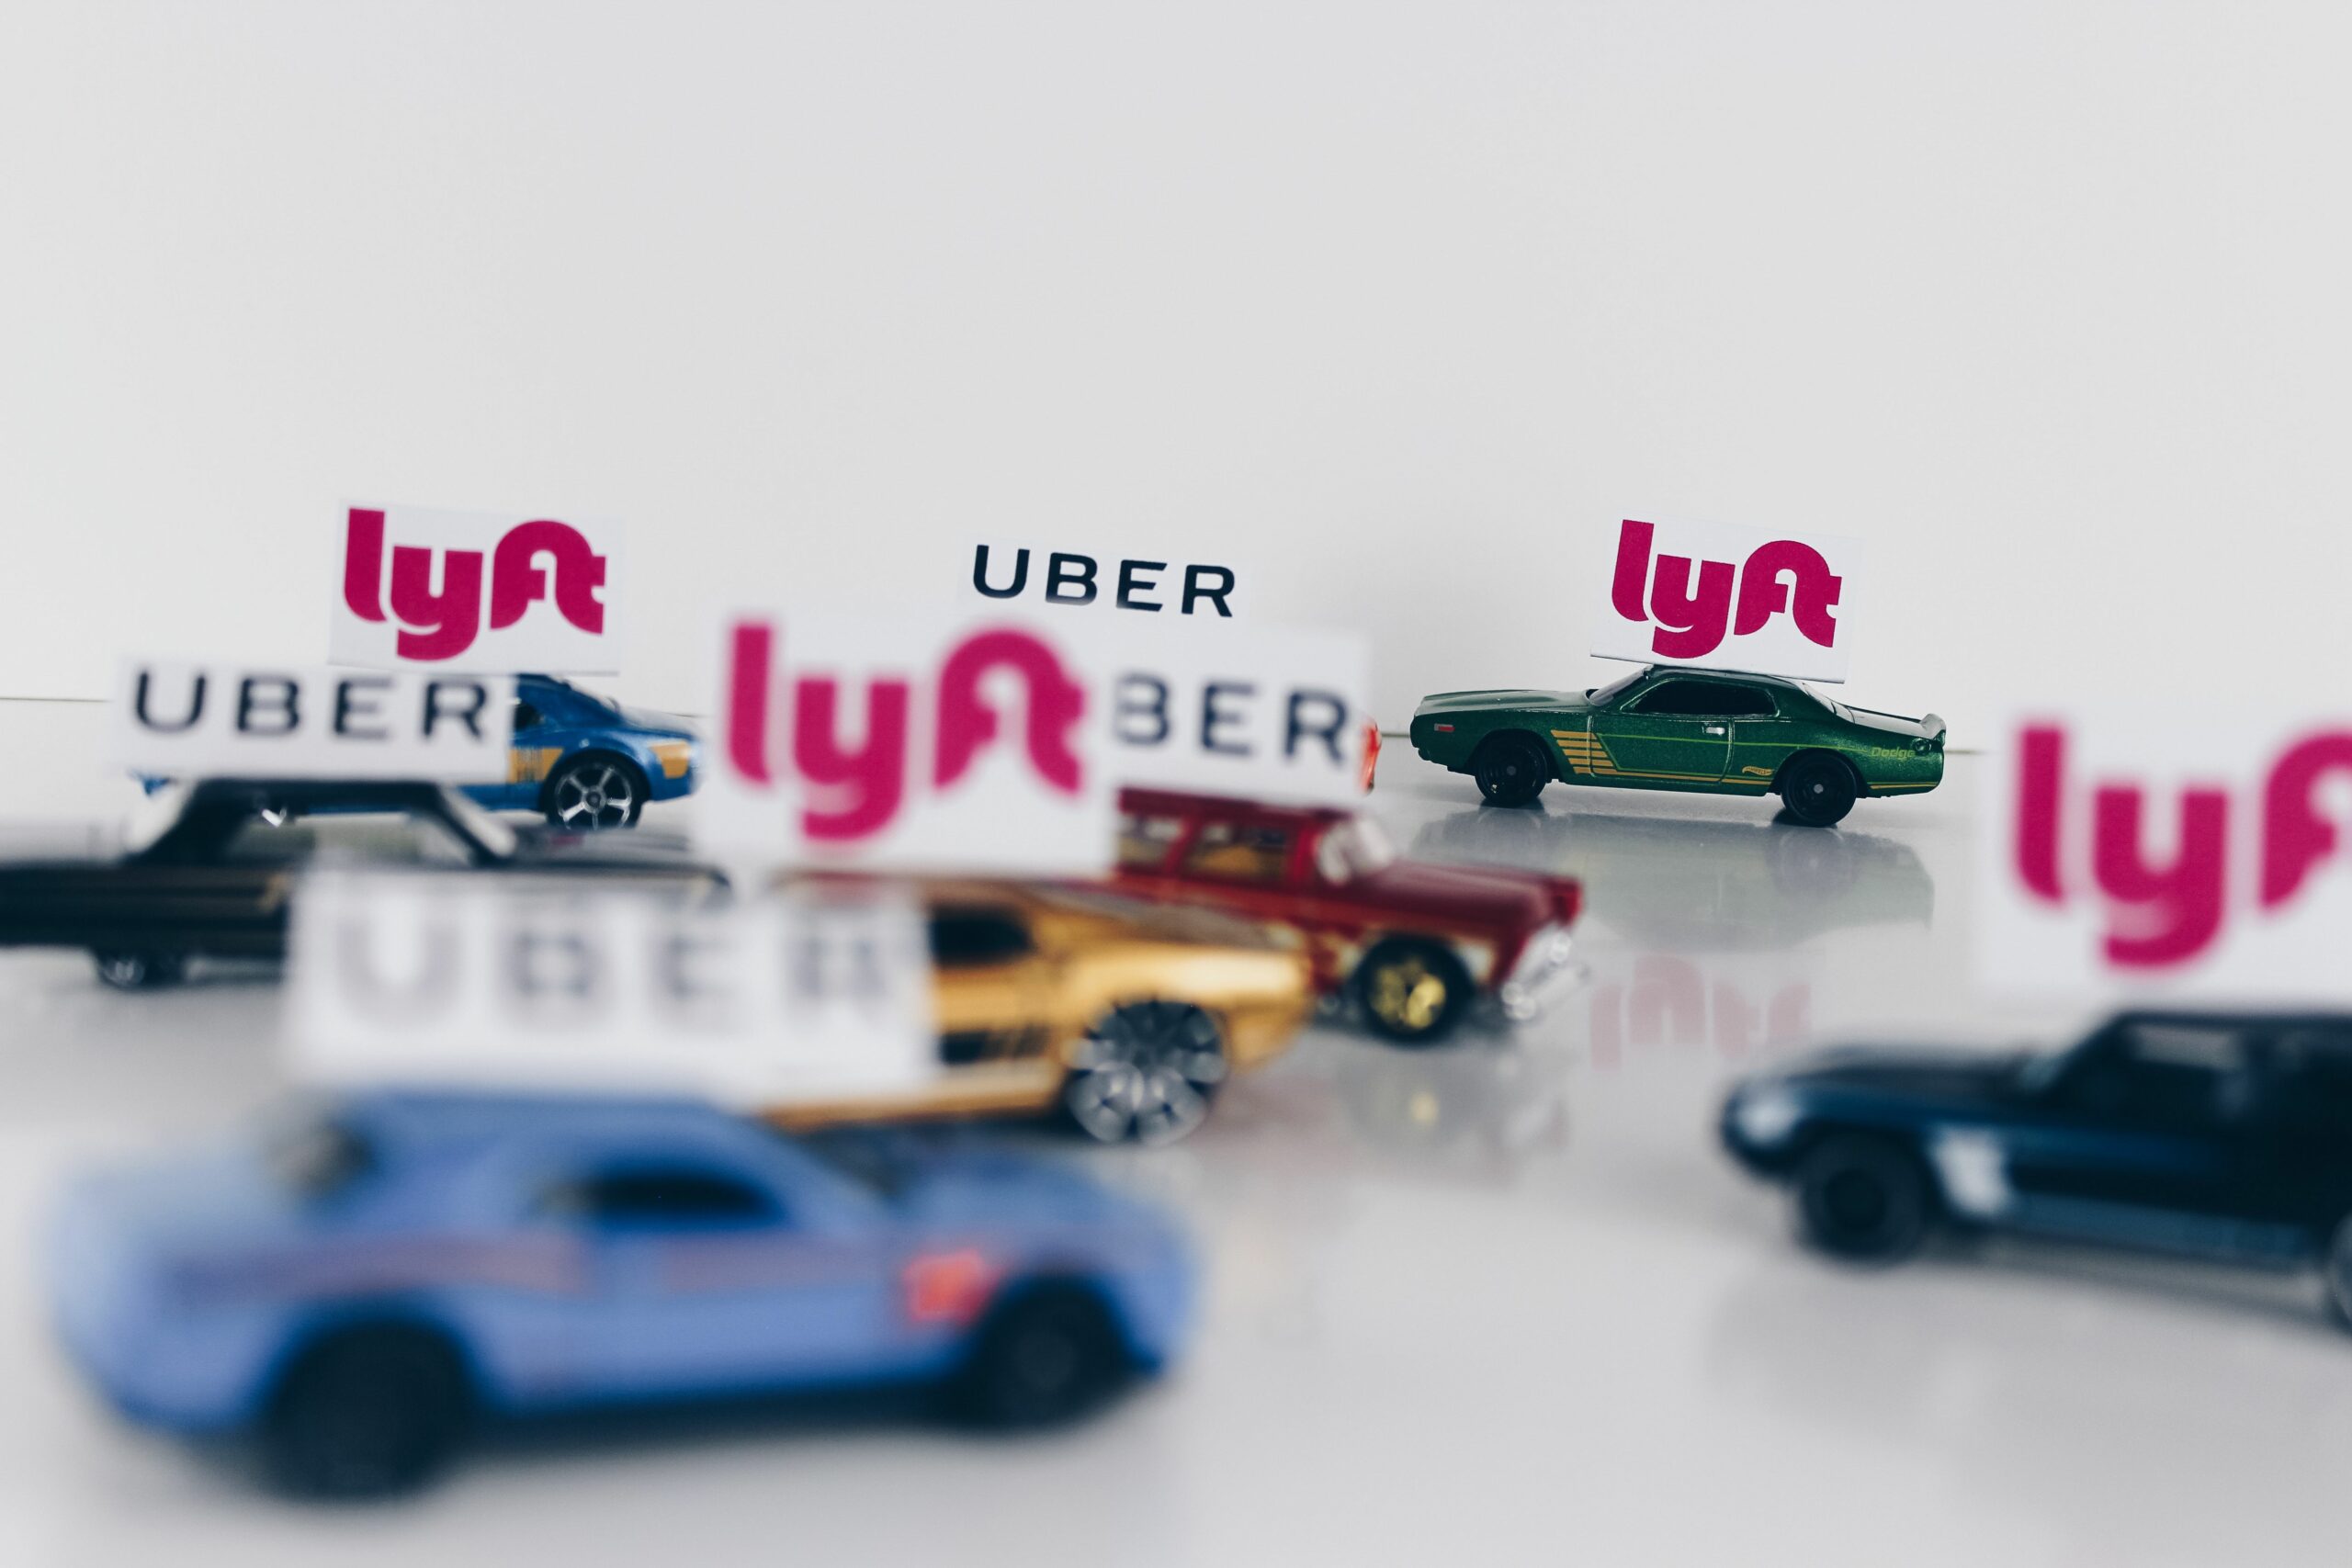 uber and lyft ridesharing